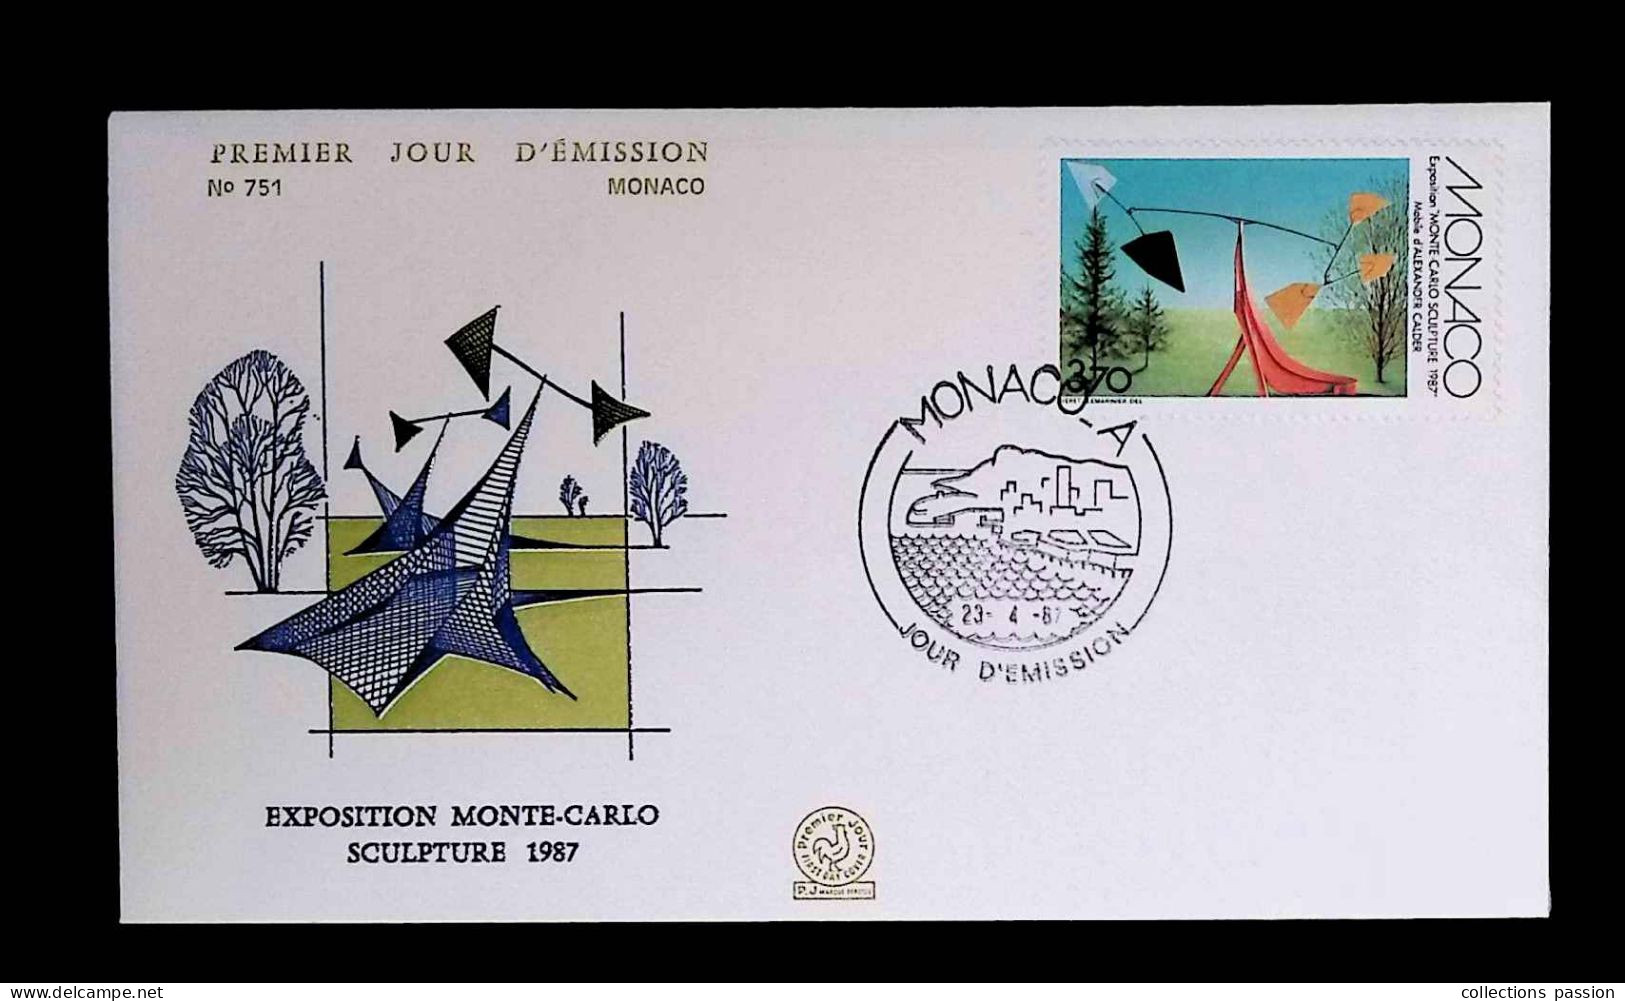 CL, FDC, Premier Jour,  Monaco. A, 23-4-1987,  Exposition Monte-Carlo, Sculpture 1987 - FDC